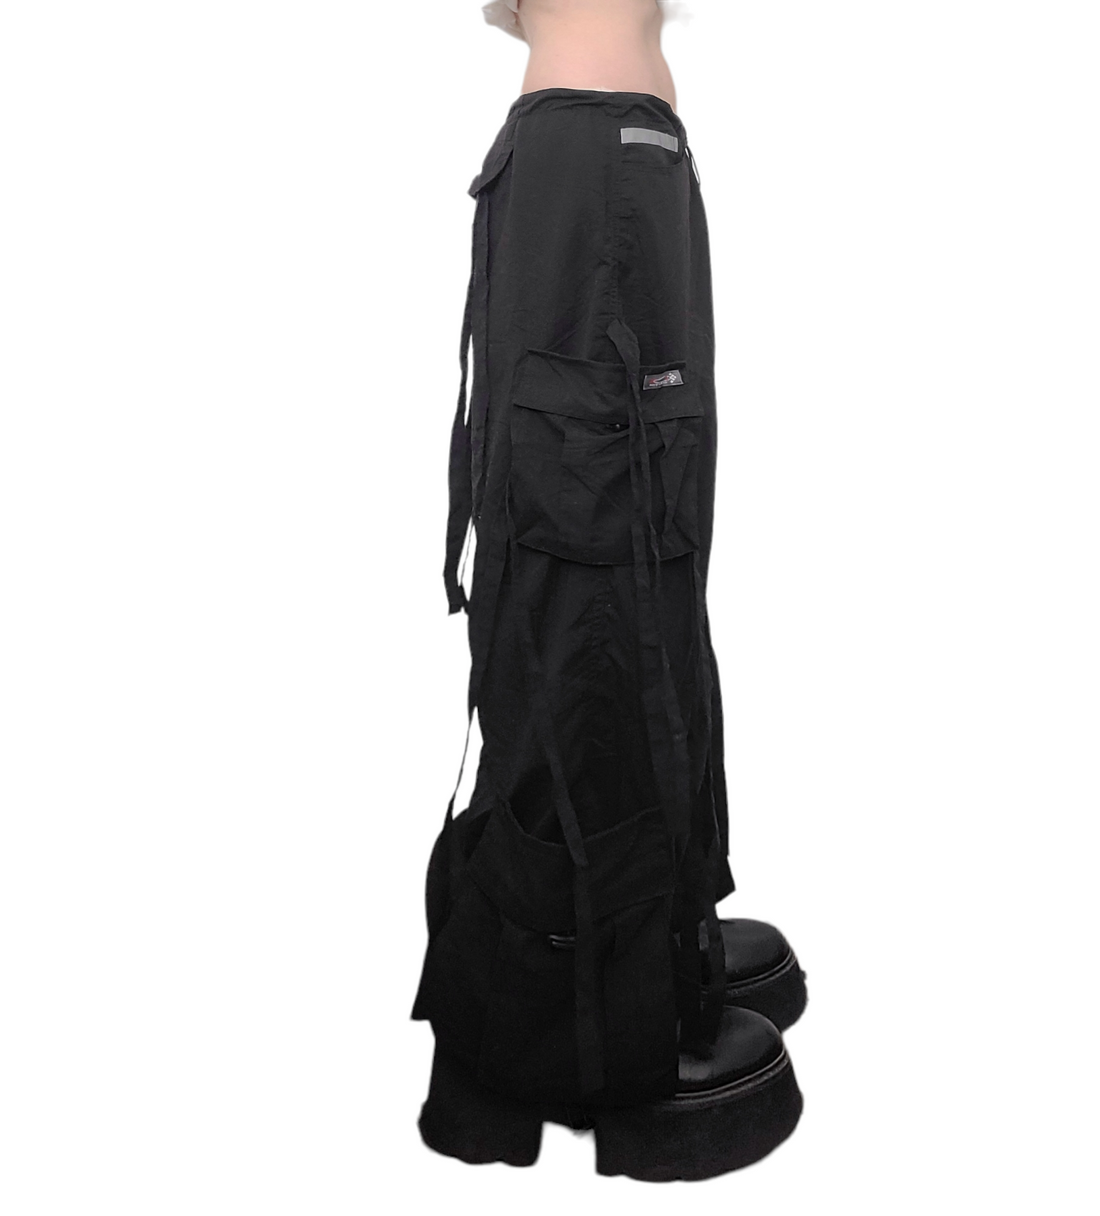 90s black parachute pants